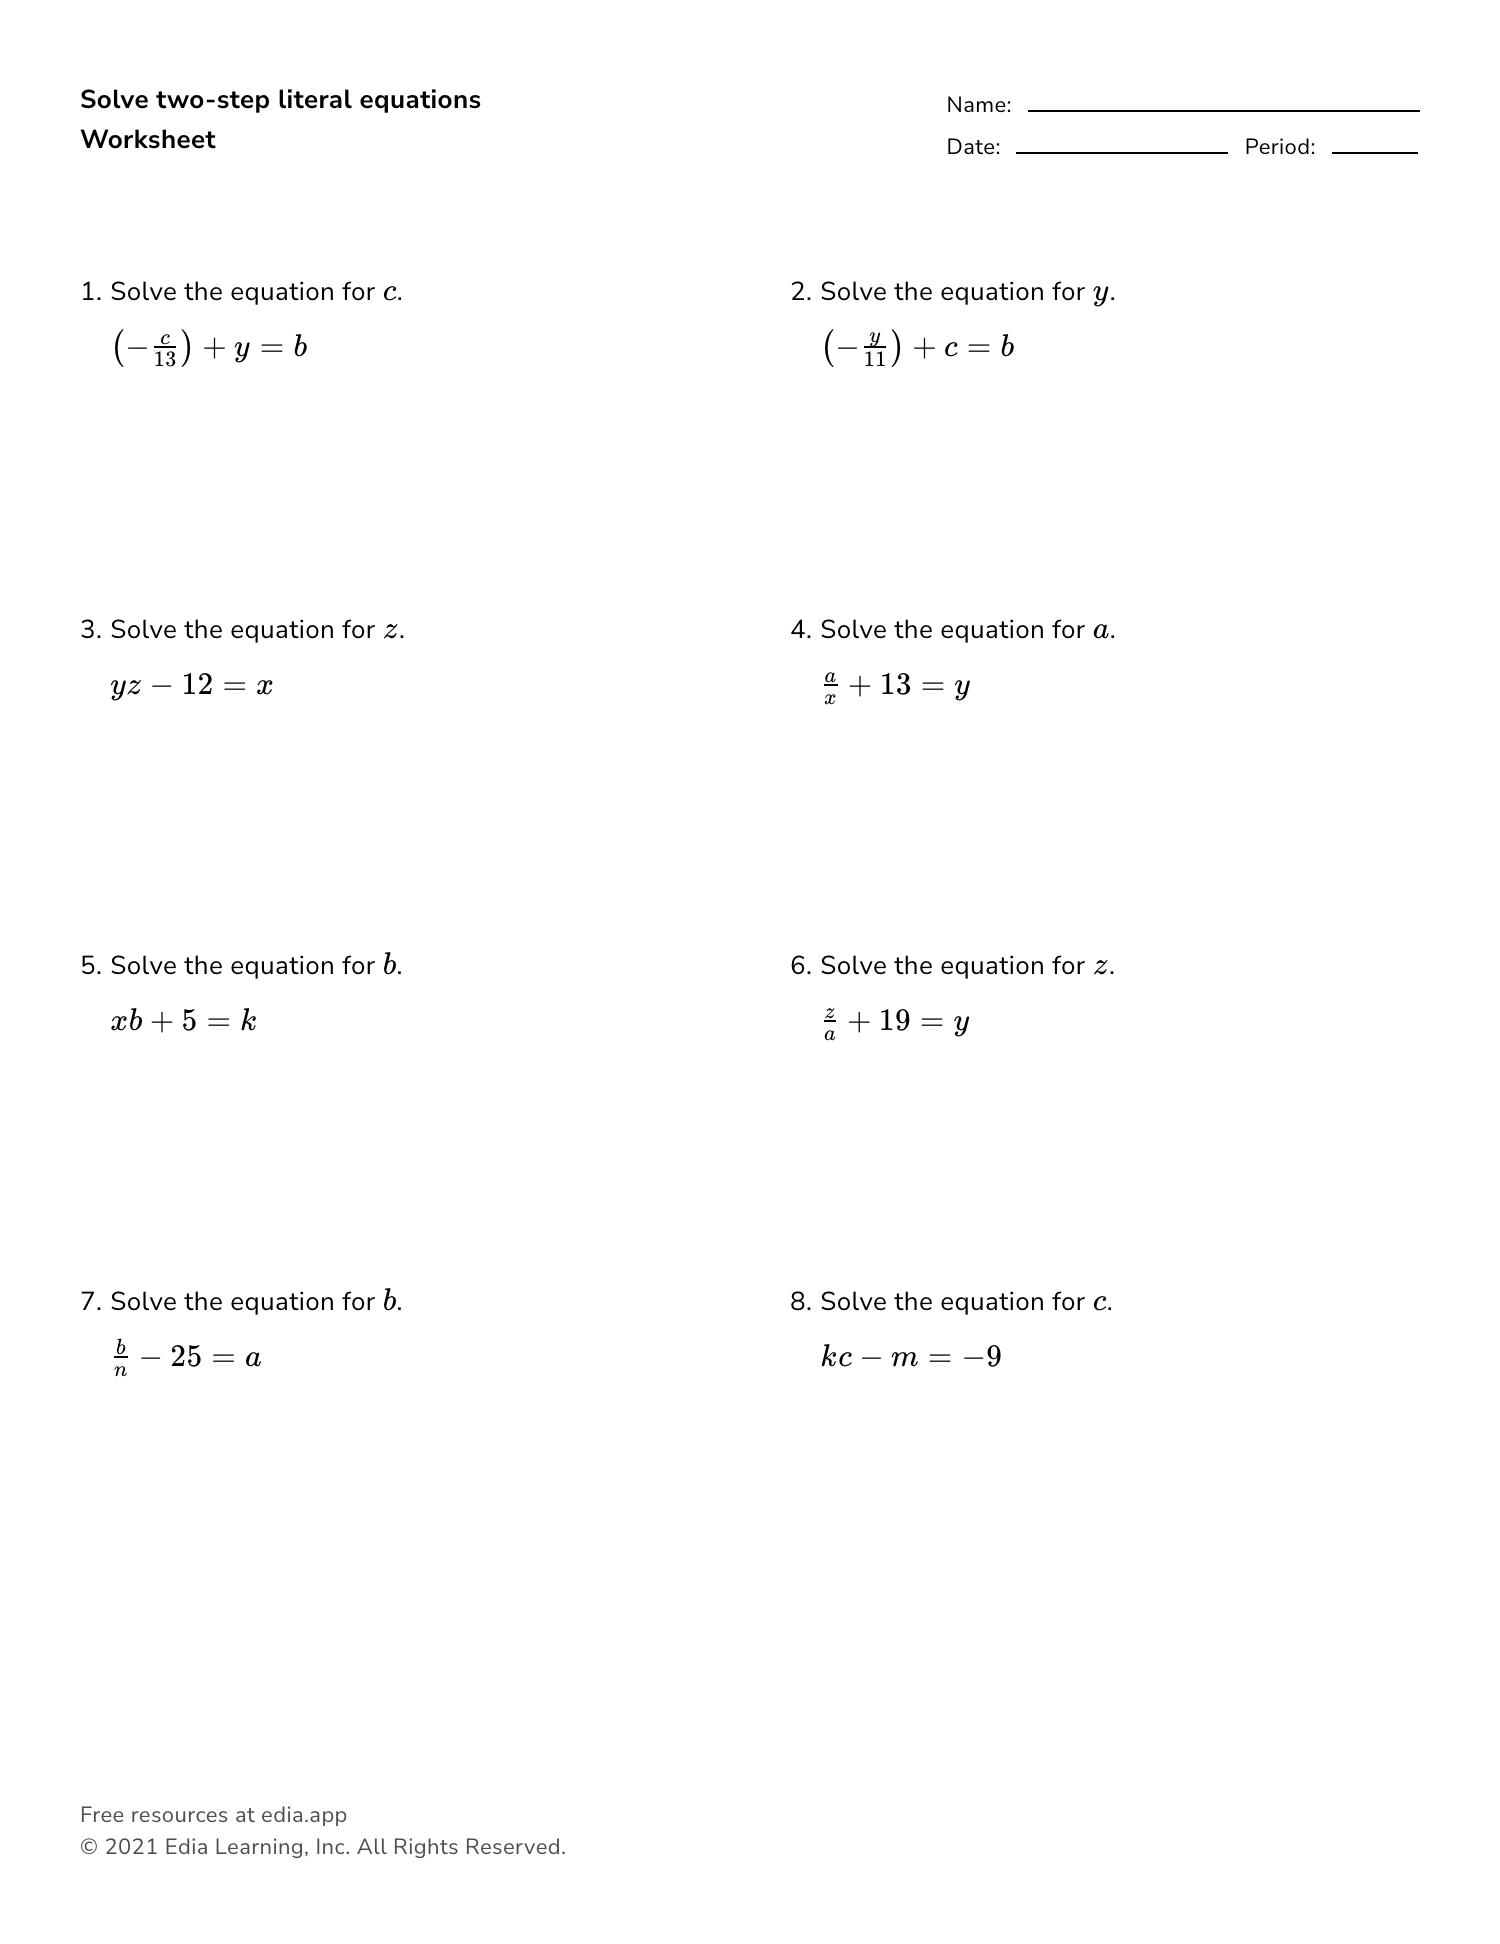 solve-literal-equations-worksheet